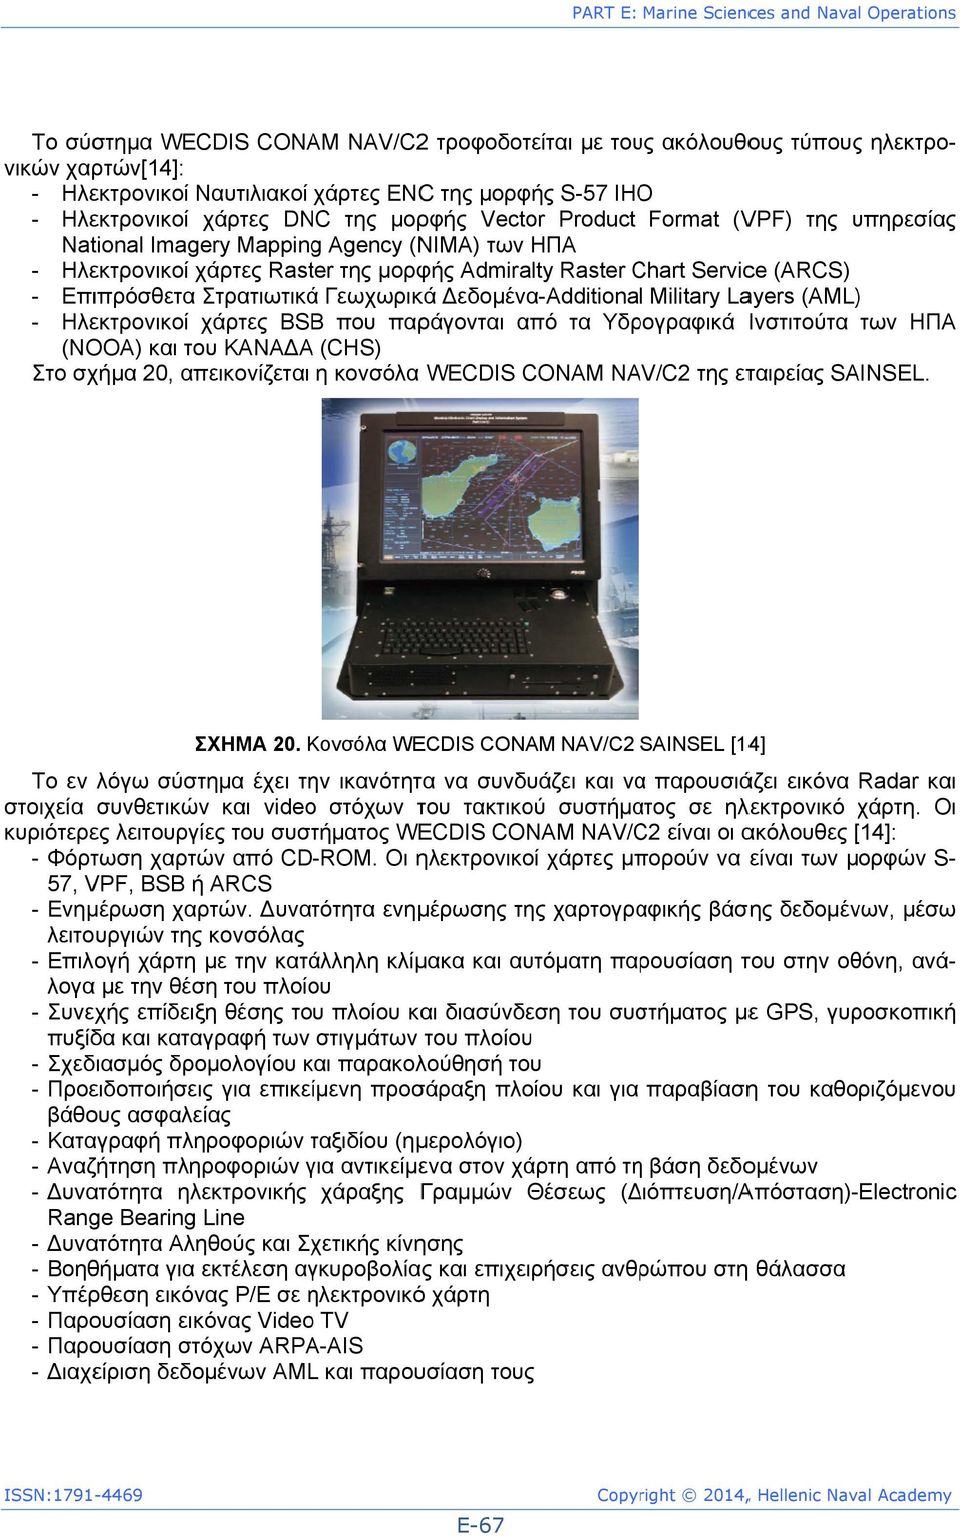 Service (ARCS) - Επιπρόσθετα Στρατιωτικά Γεωχωρικά Δεδομένα-Additional Military Layers (AML)) - Ηλεκτρονικοί χάρτες BSBB που παράγονται από τα Υδρογραφικά Ινστιτούτα των ΗΠΑ (NOOA) και του ΚΑΝΑΔΑΑ